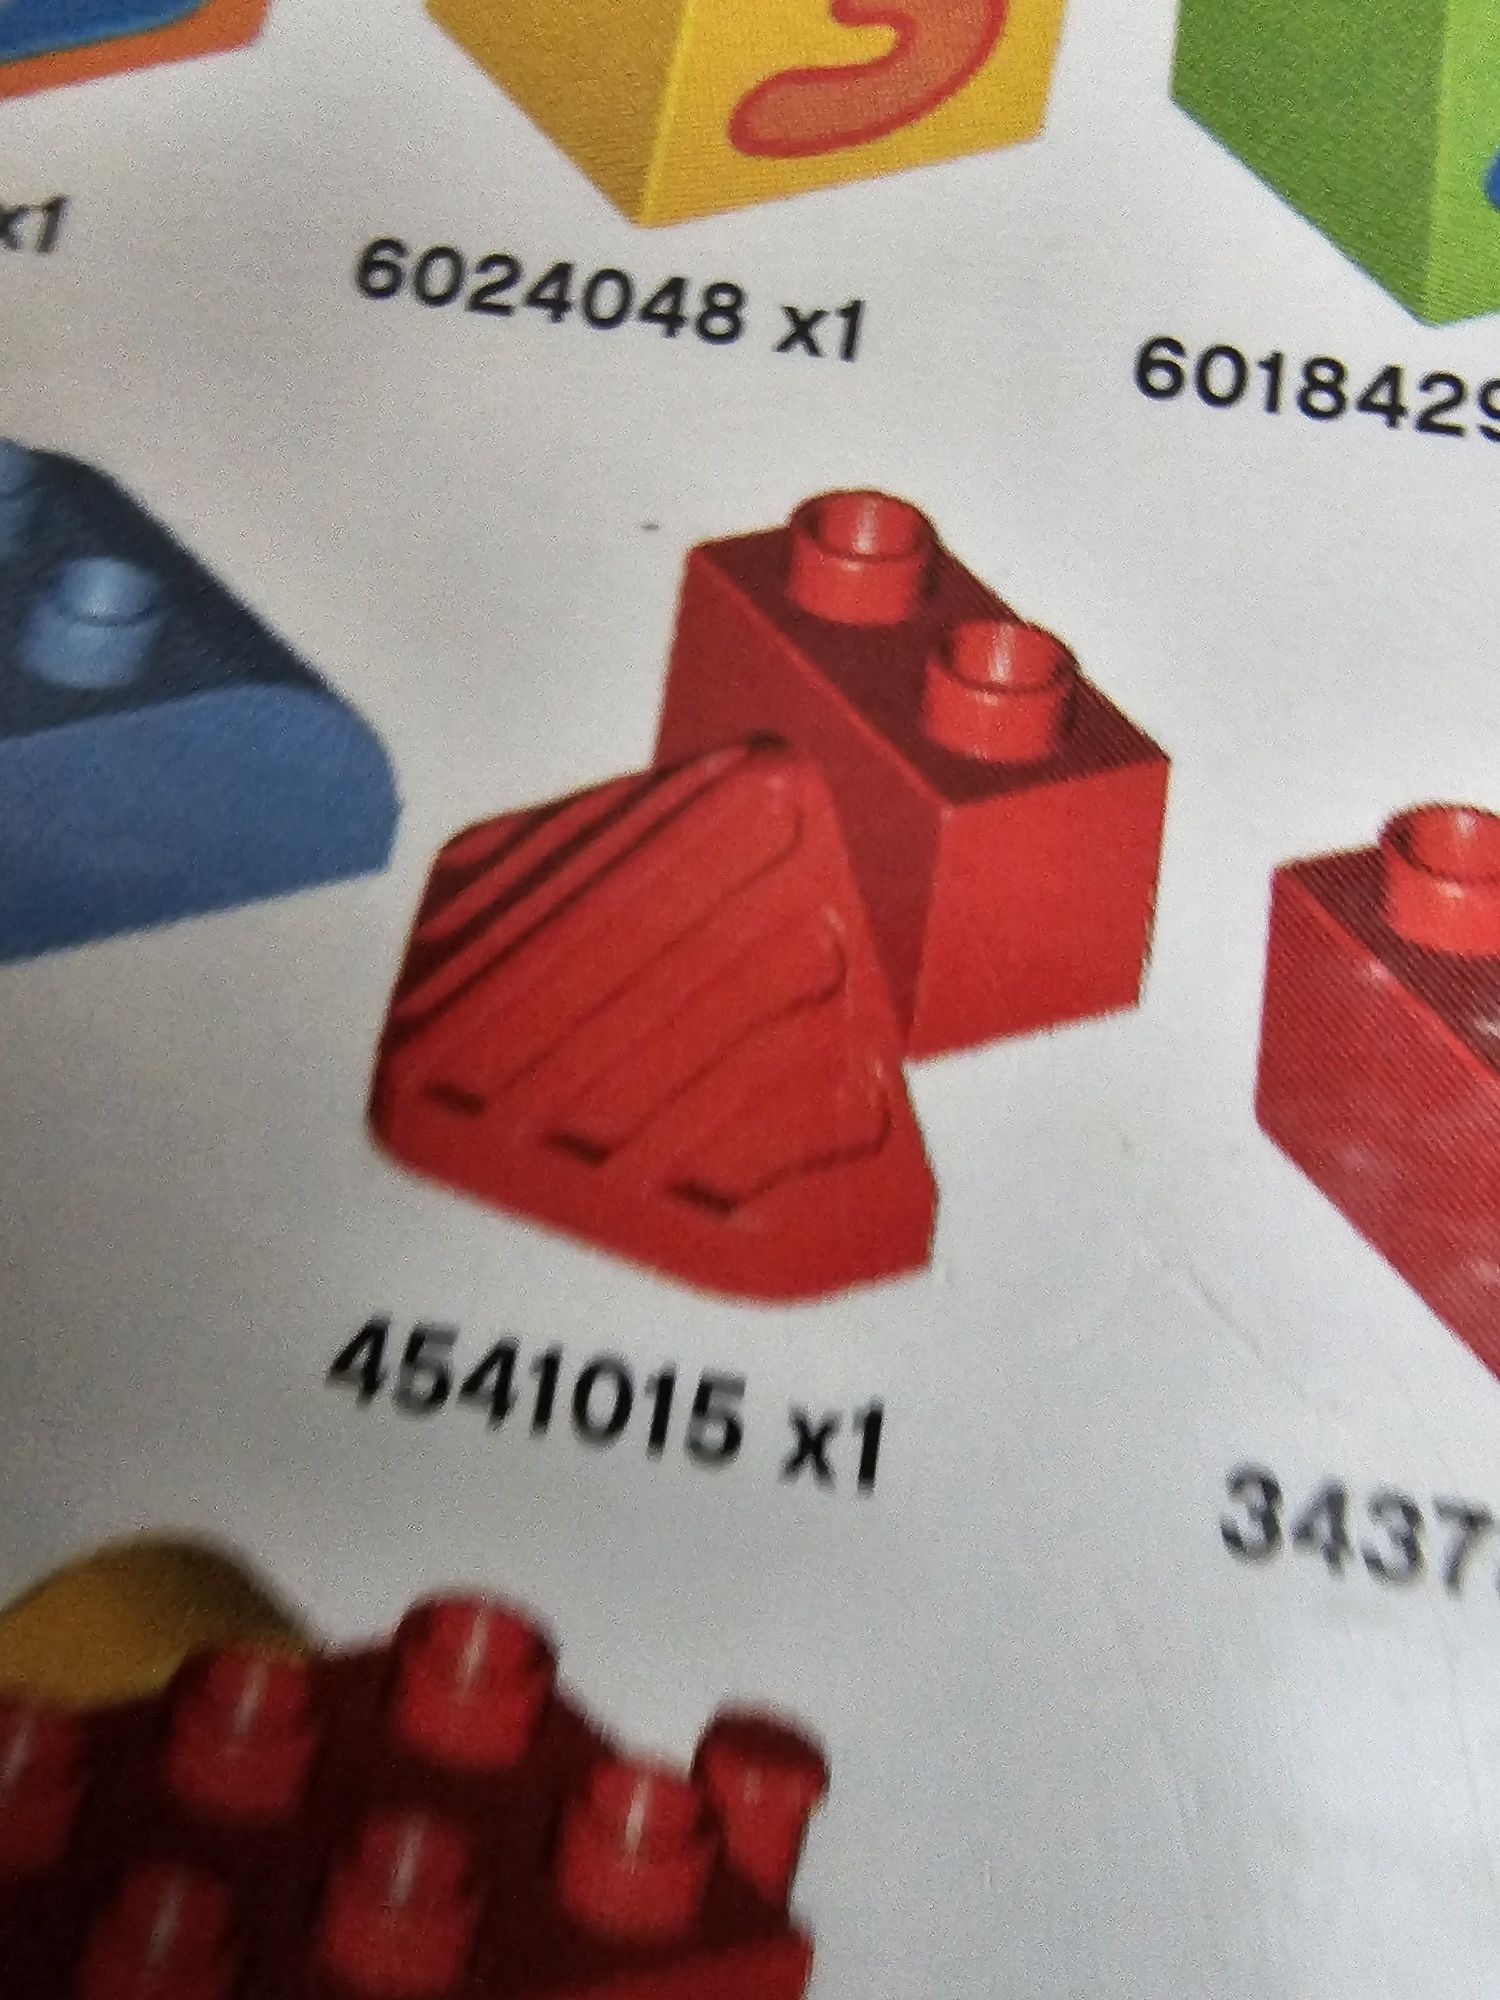 Zestaw klocków Lego Duplo 10558

Stan idealny oprócz jednego brakując